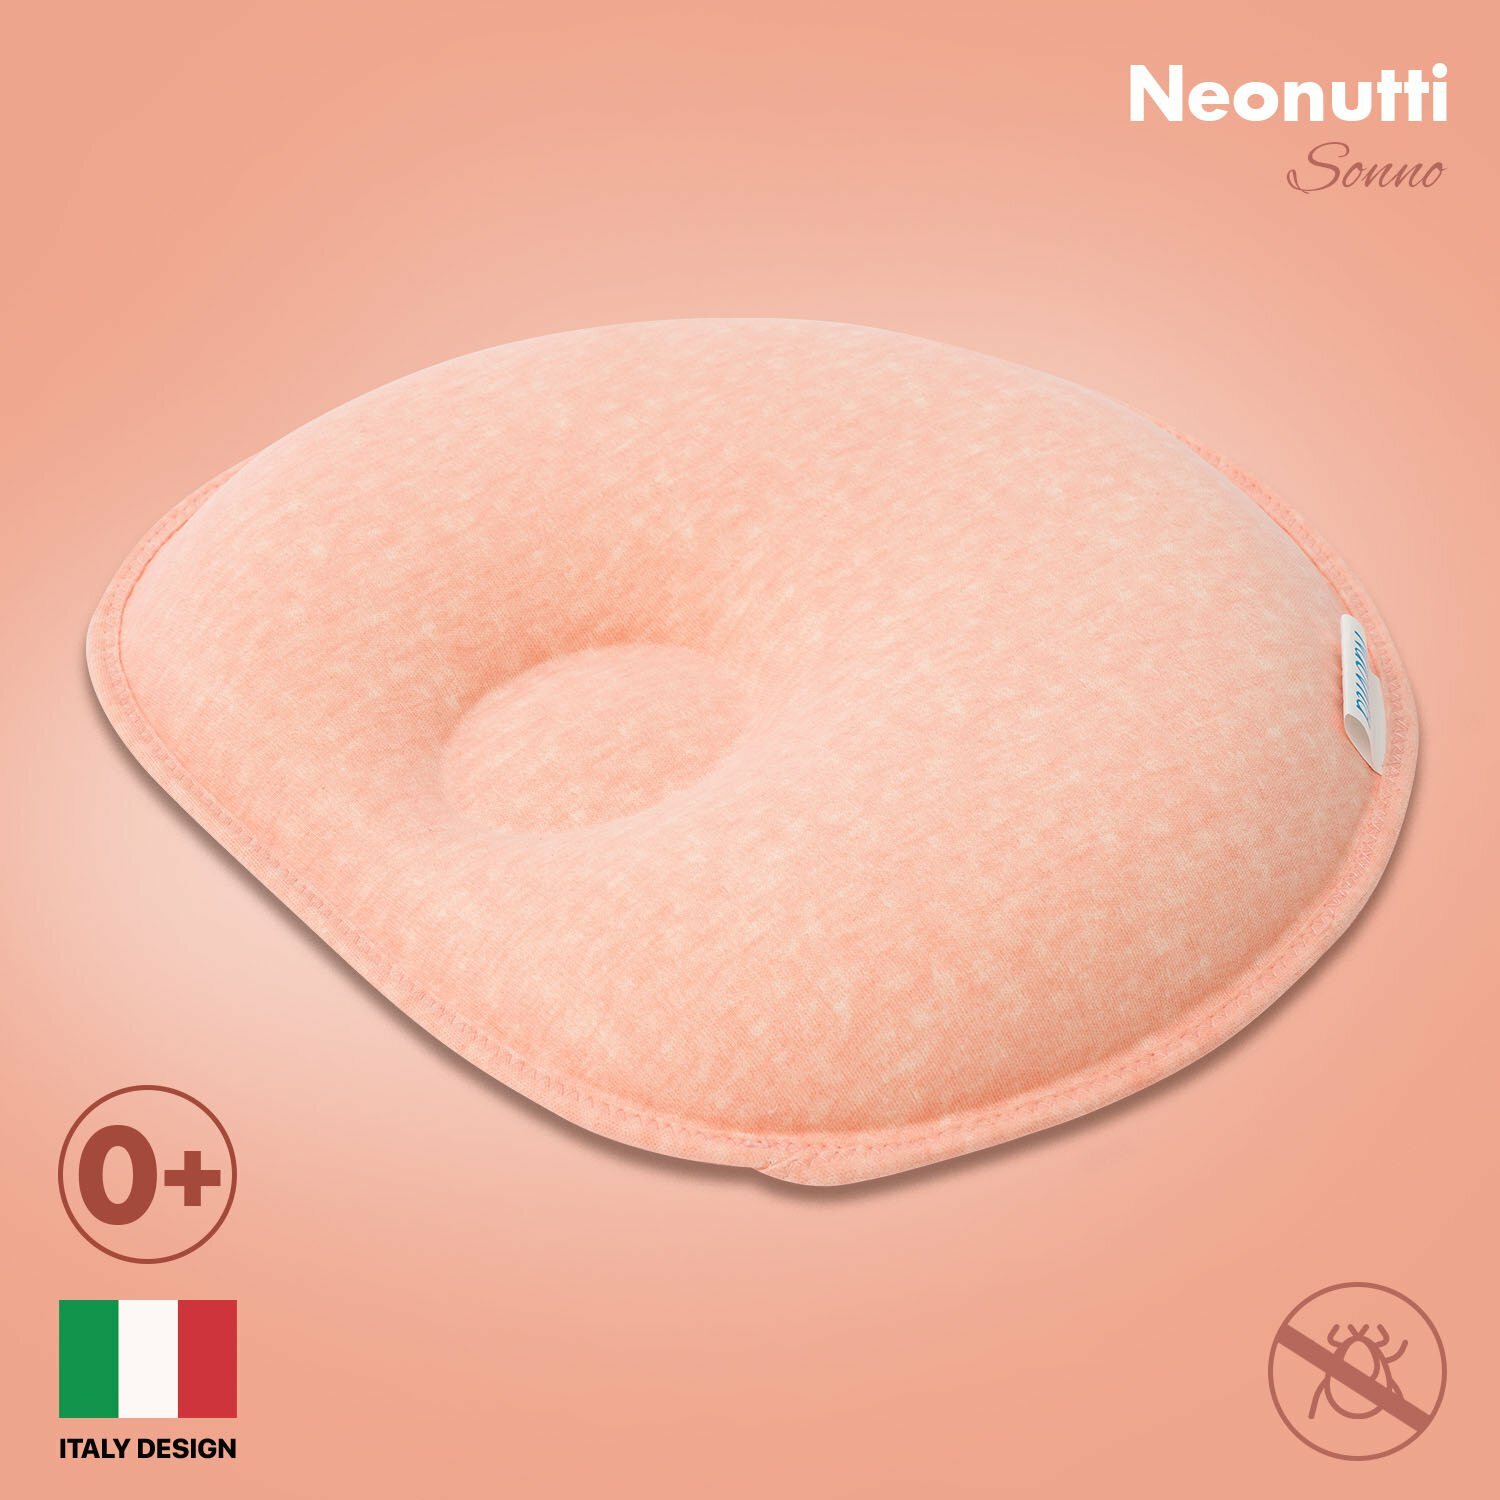 Подушка Nuovita NEONUTTI "Sonno Dipinto", для новорожденного (цвета в ассорт.) Сонный гномик - фото №2